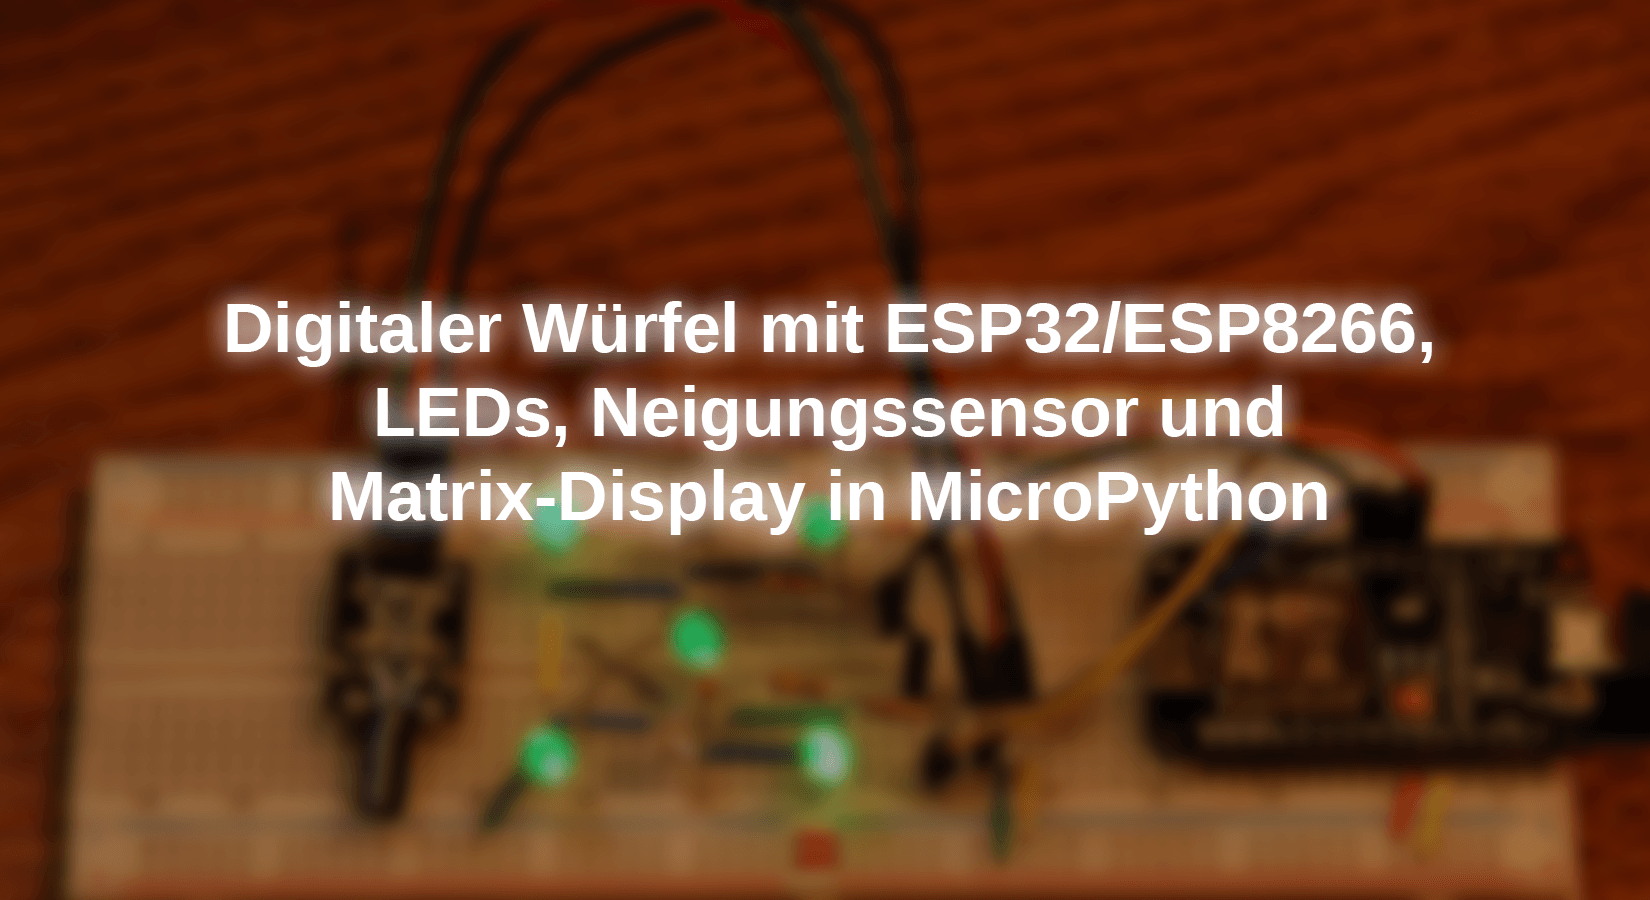 Digitaler Würfel mit ESP32/ESP8266, LEDs, Neigungssensor und Matrix-Display in MicroPython - AZ-Delivery